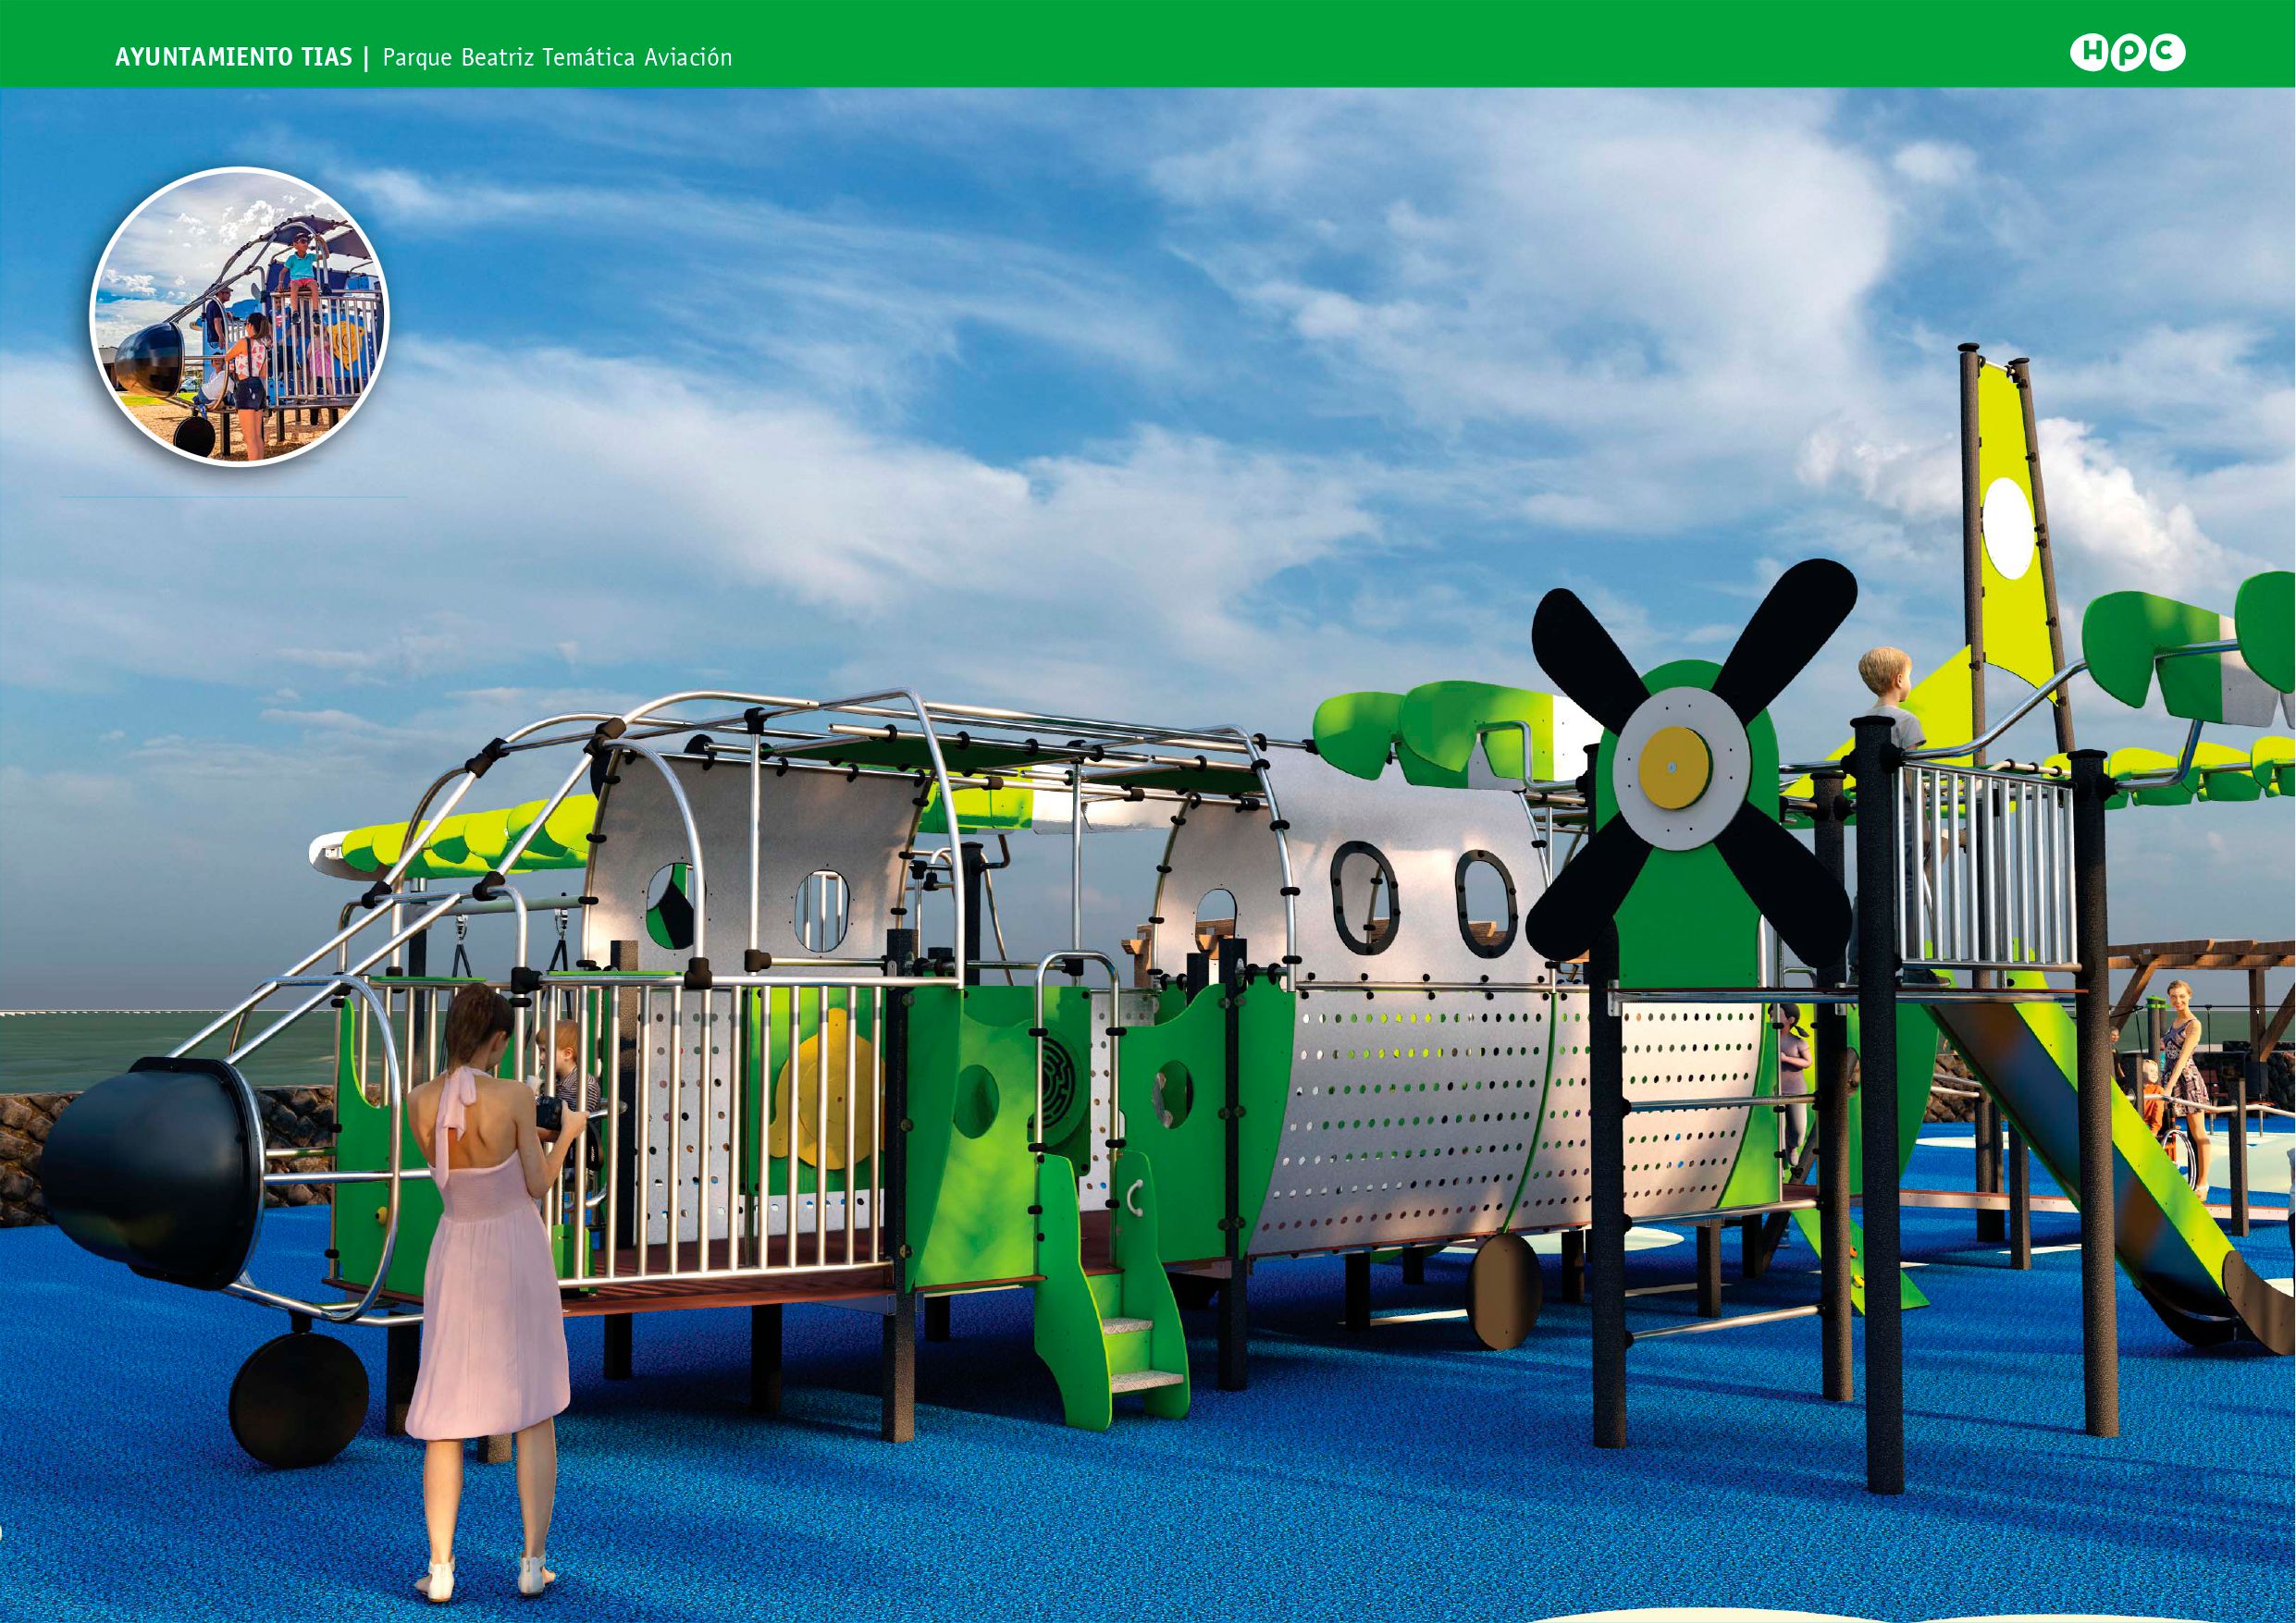 Proyecto de reforma del parque infantil de Matagorda. Foto: Ayuntamiento de Tías.